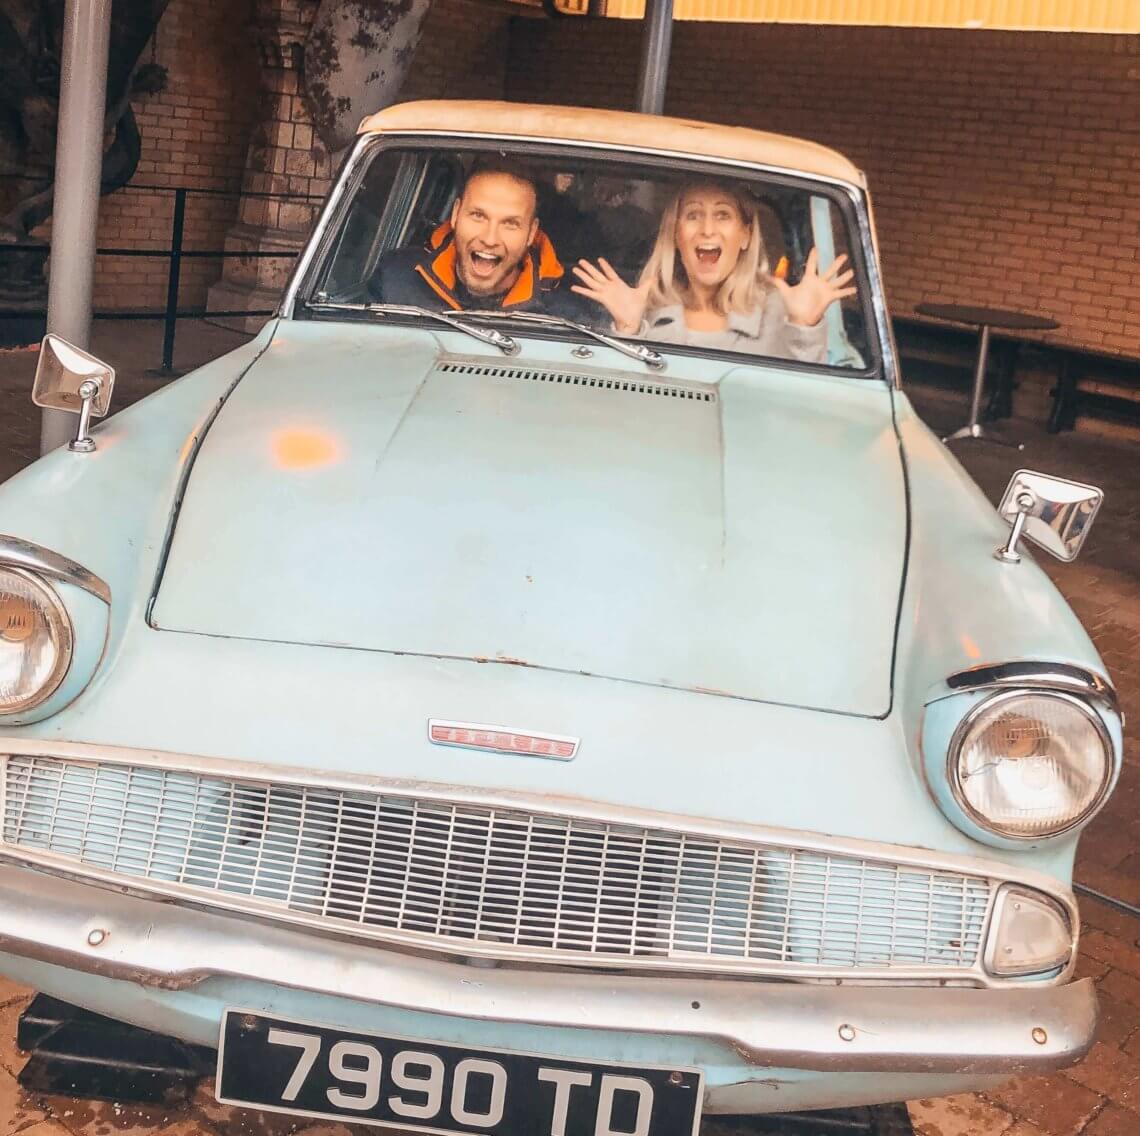 Ford Anglia a dva lidé sedící v autě Studio Harryho Pottera